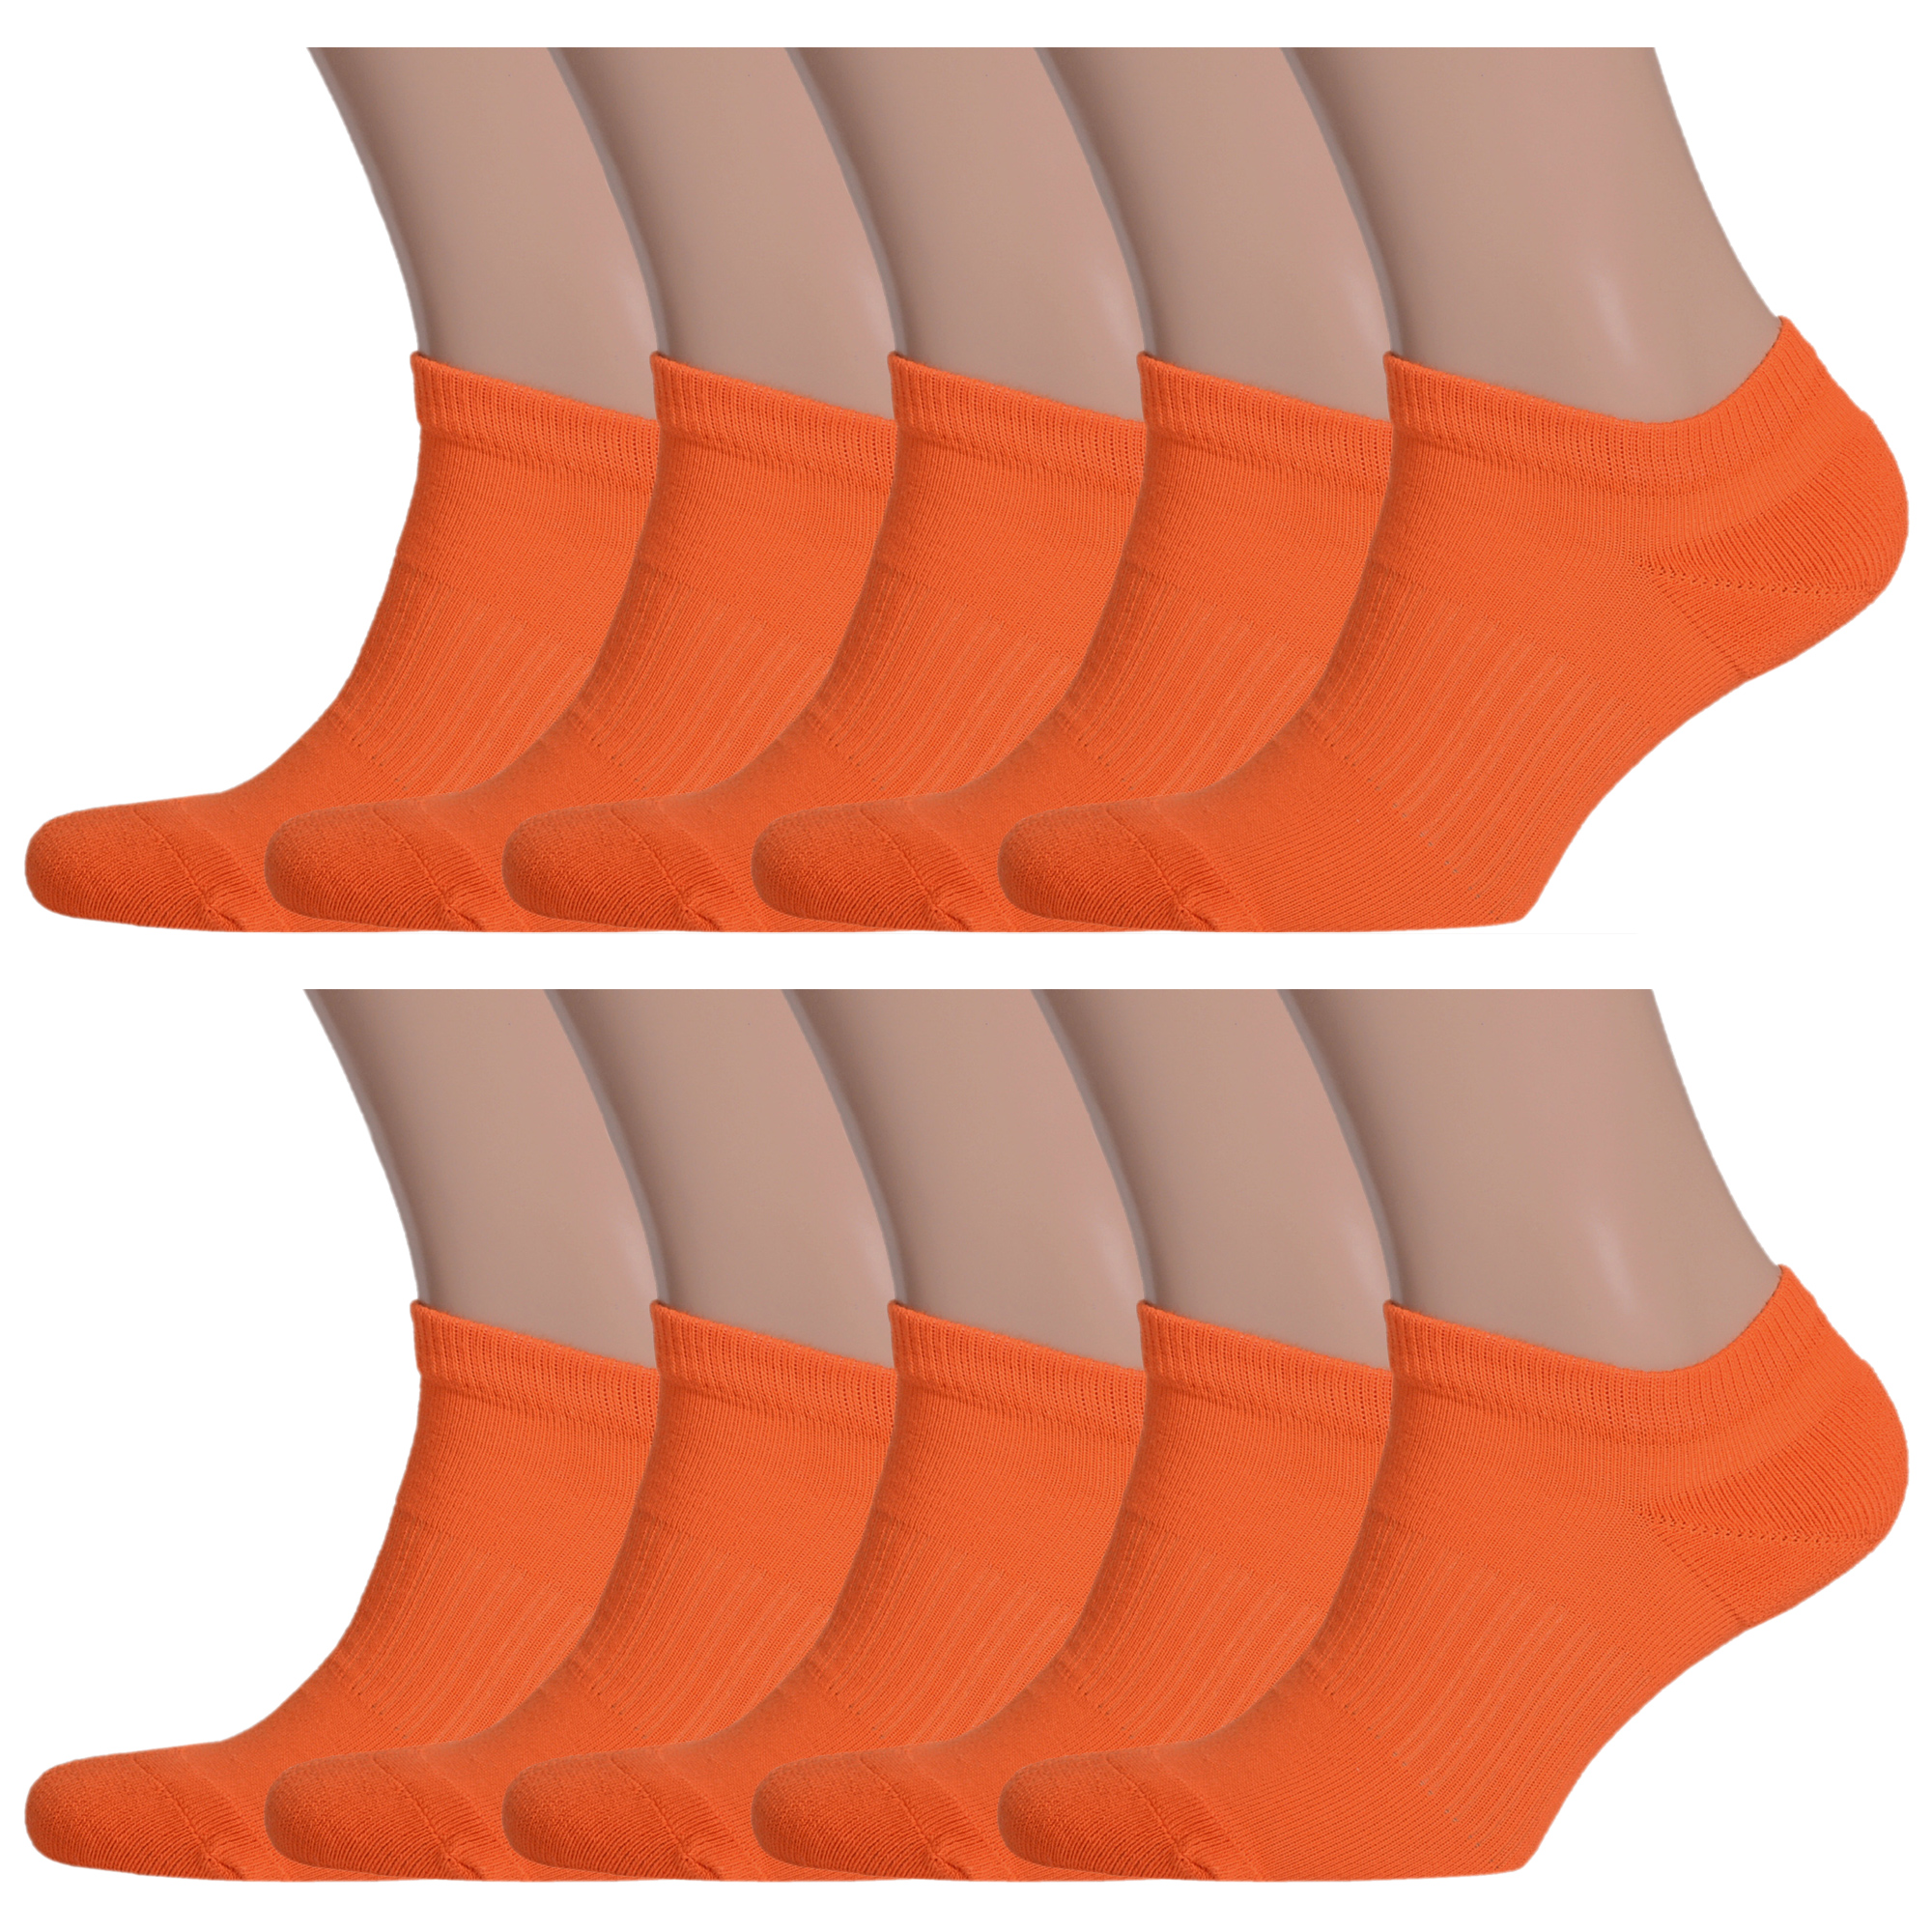 Комплект носков мужских Palama 10-МКС-03 оранжевых 25 - купить в ООО НосМаг, цена на Мегамаркет